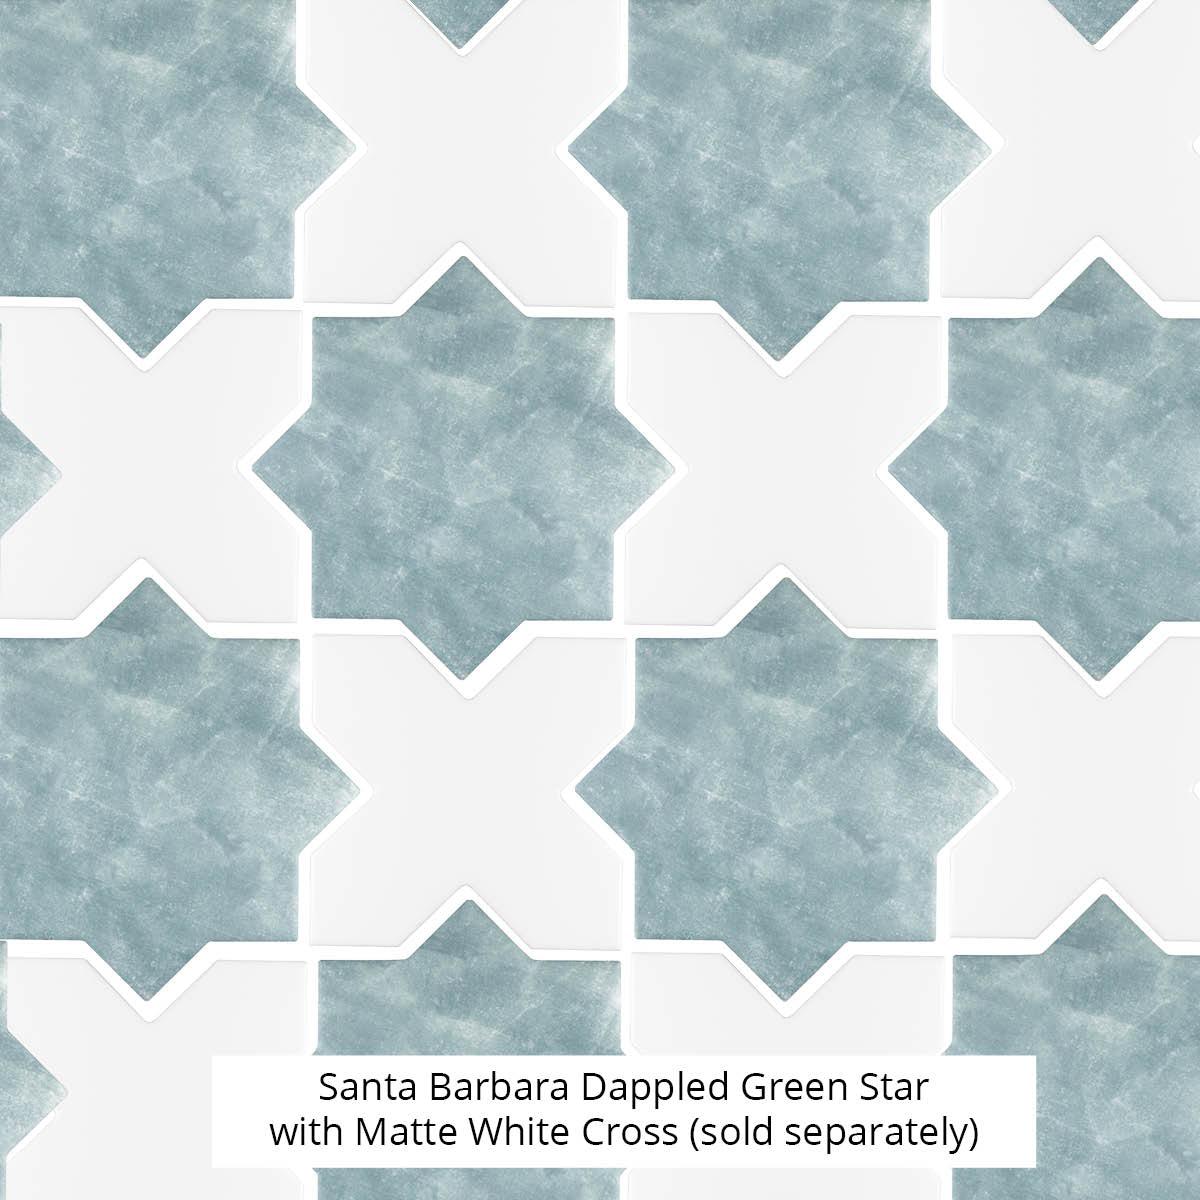 Santa Barbara Matte White Cross Ceramic Tile | Star and Cross Pattern Tile